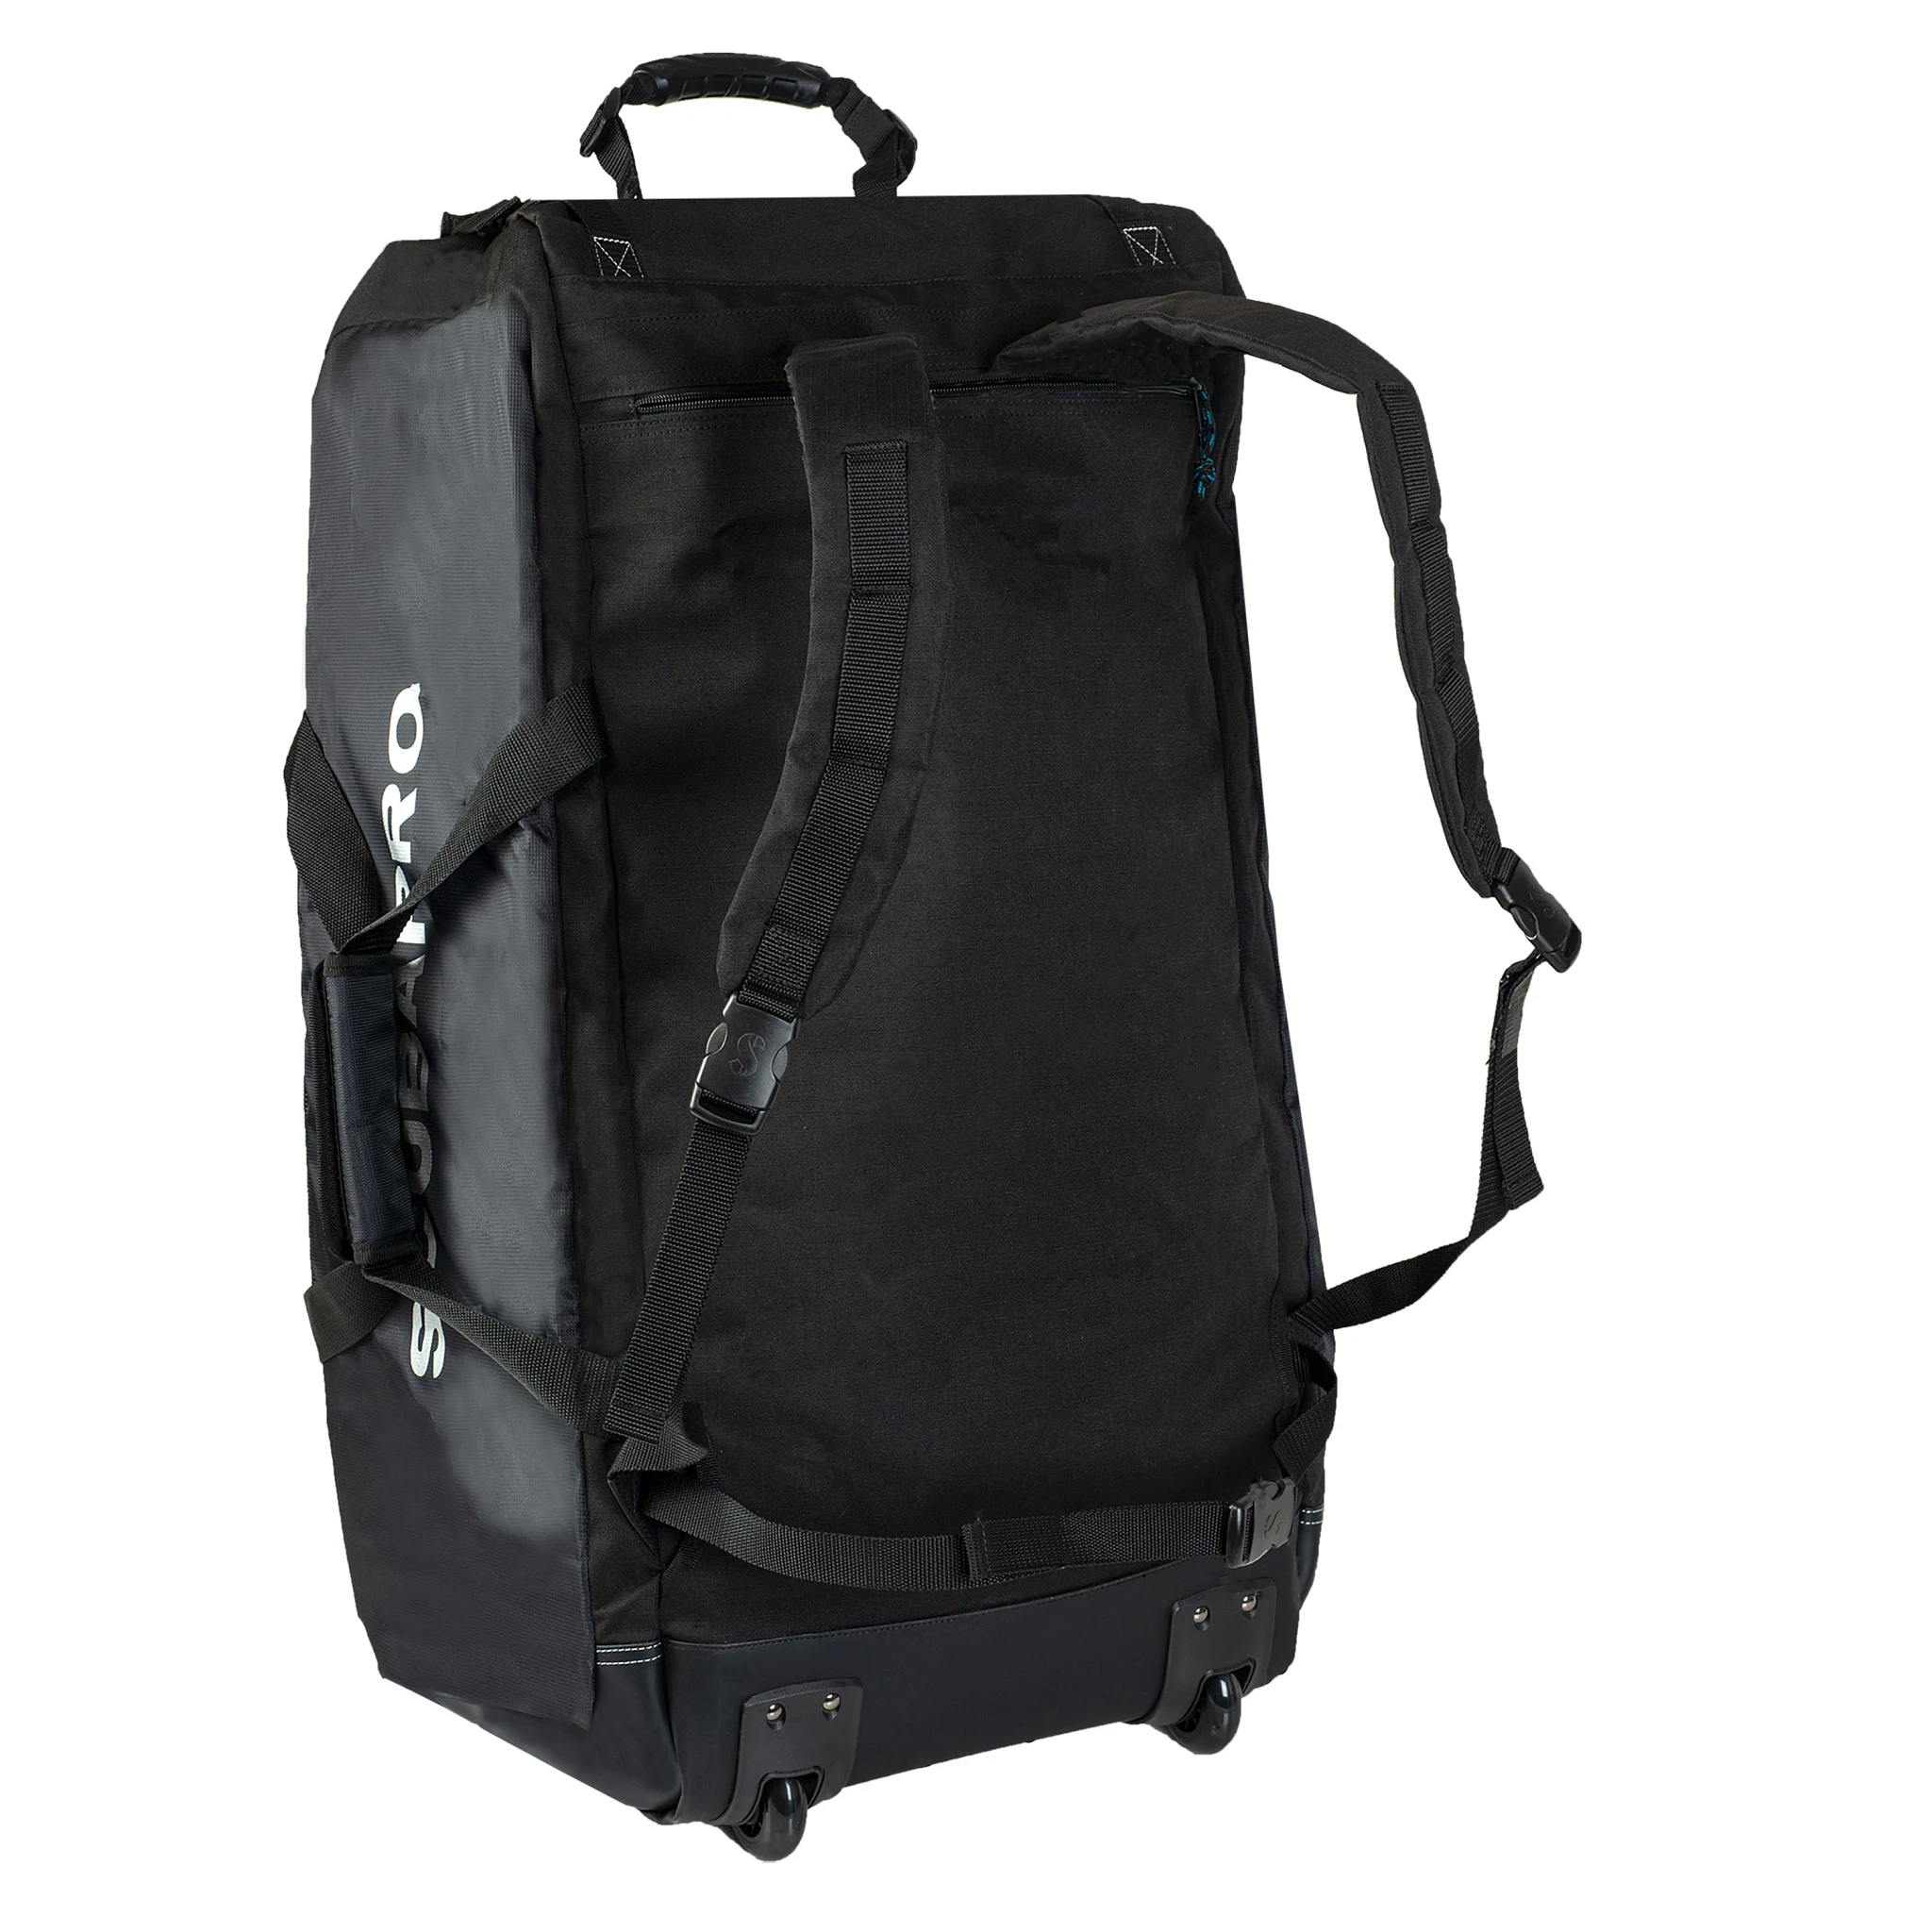 Porter Yoshida & Co Force Shoulder Bag Black – Clutch Cafe